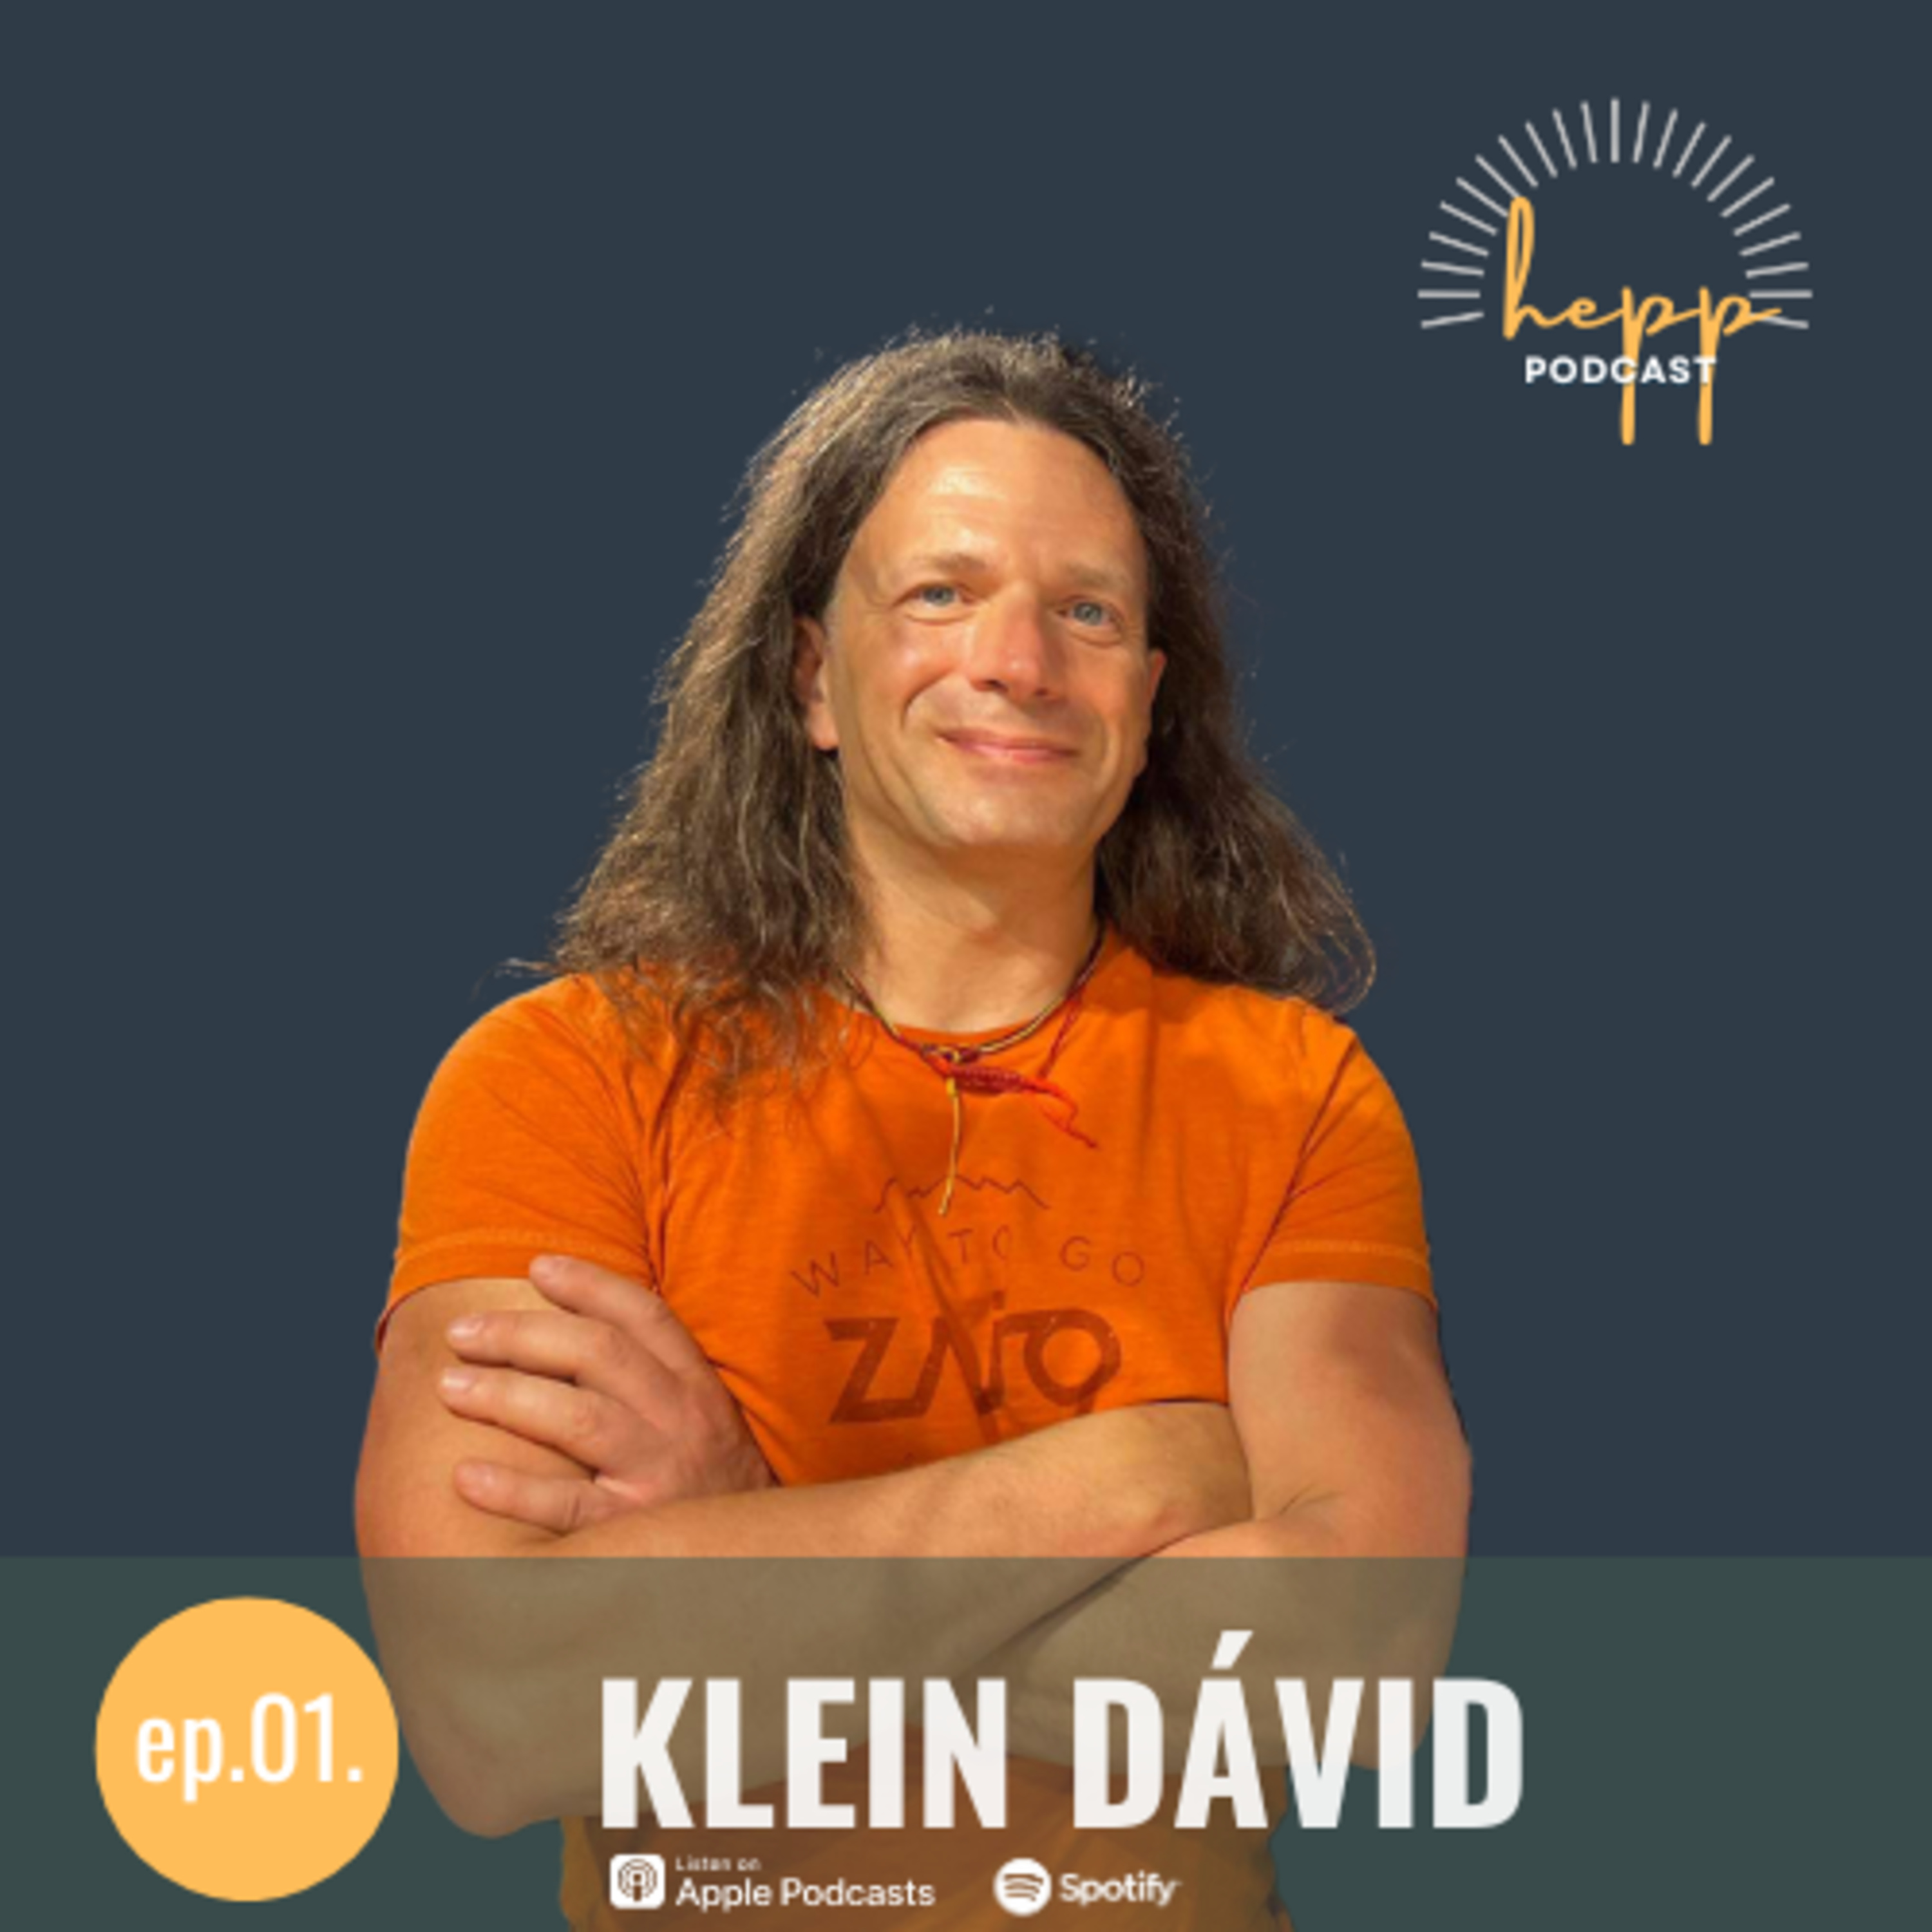 ep.01. Klein Dávid – Önző motivációktól az odaadás szabadságáig 